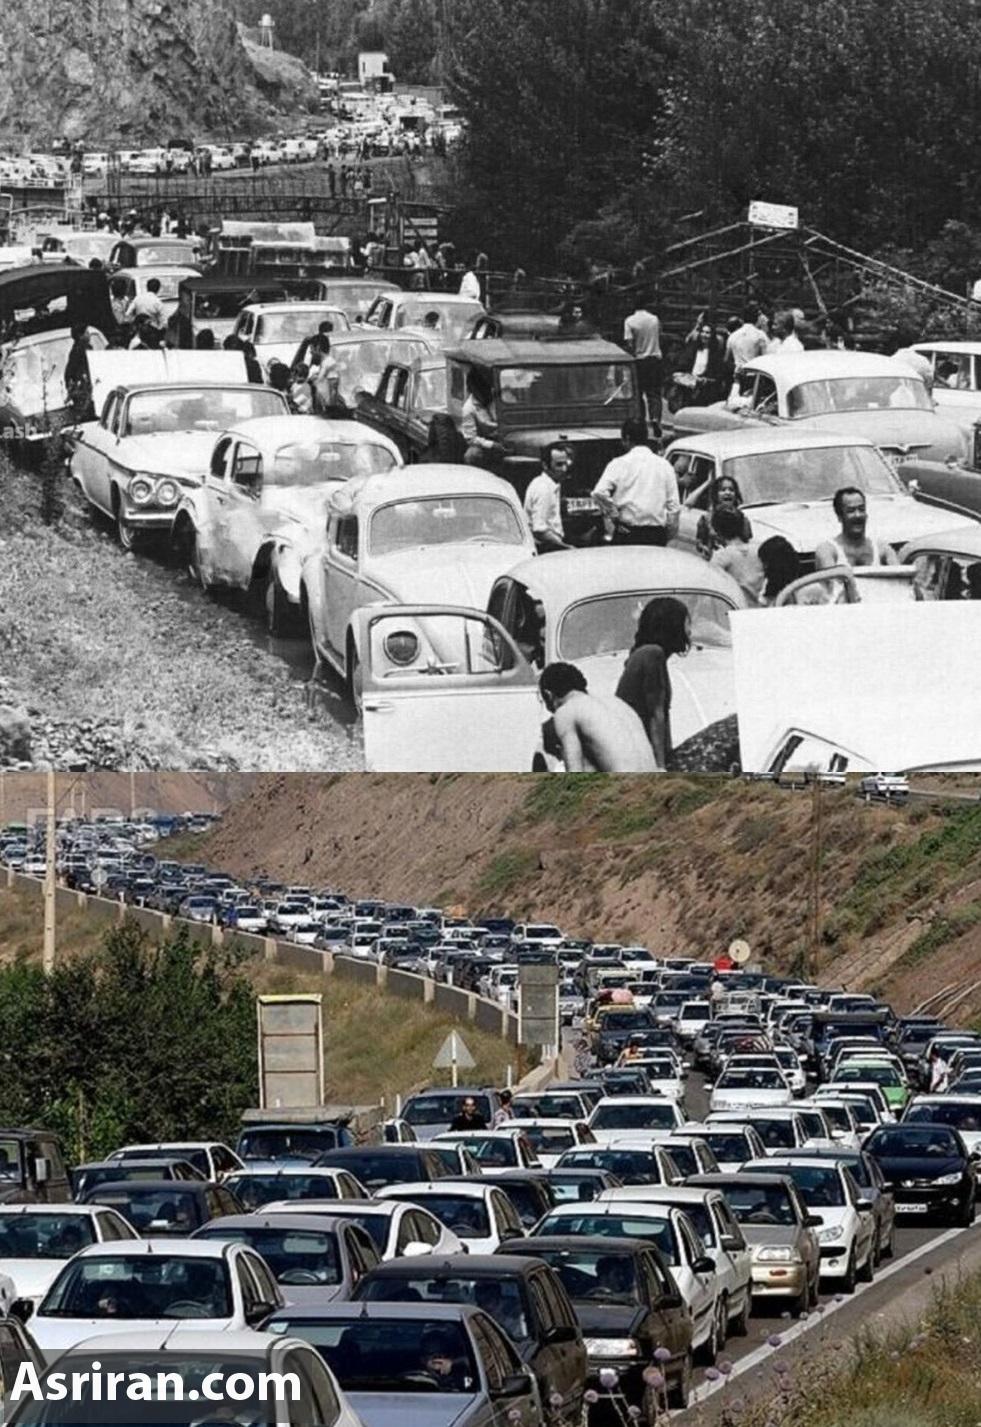  دو عکس جالب از جاده چالوس به فاصله 60 سال